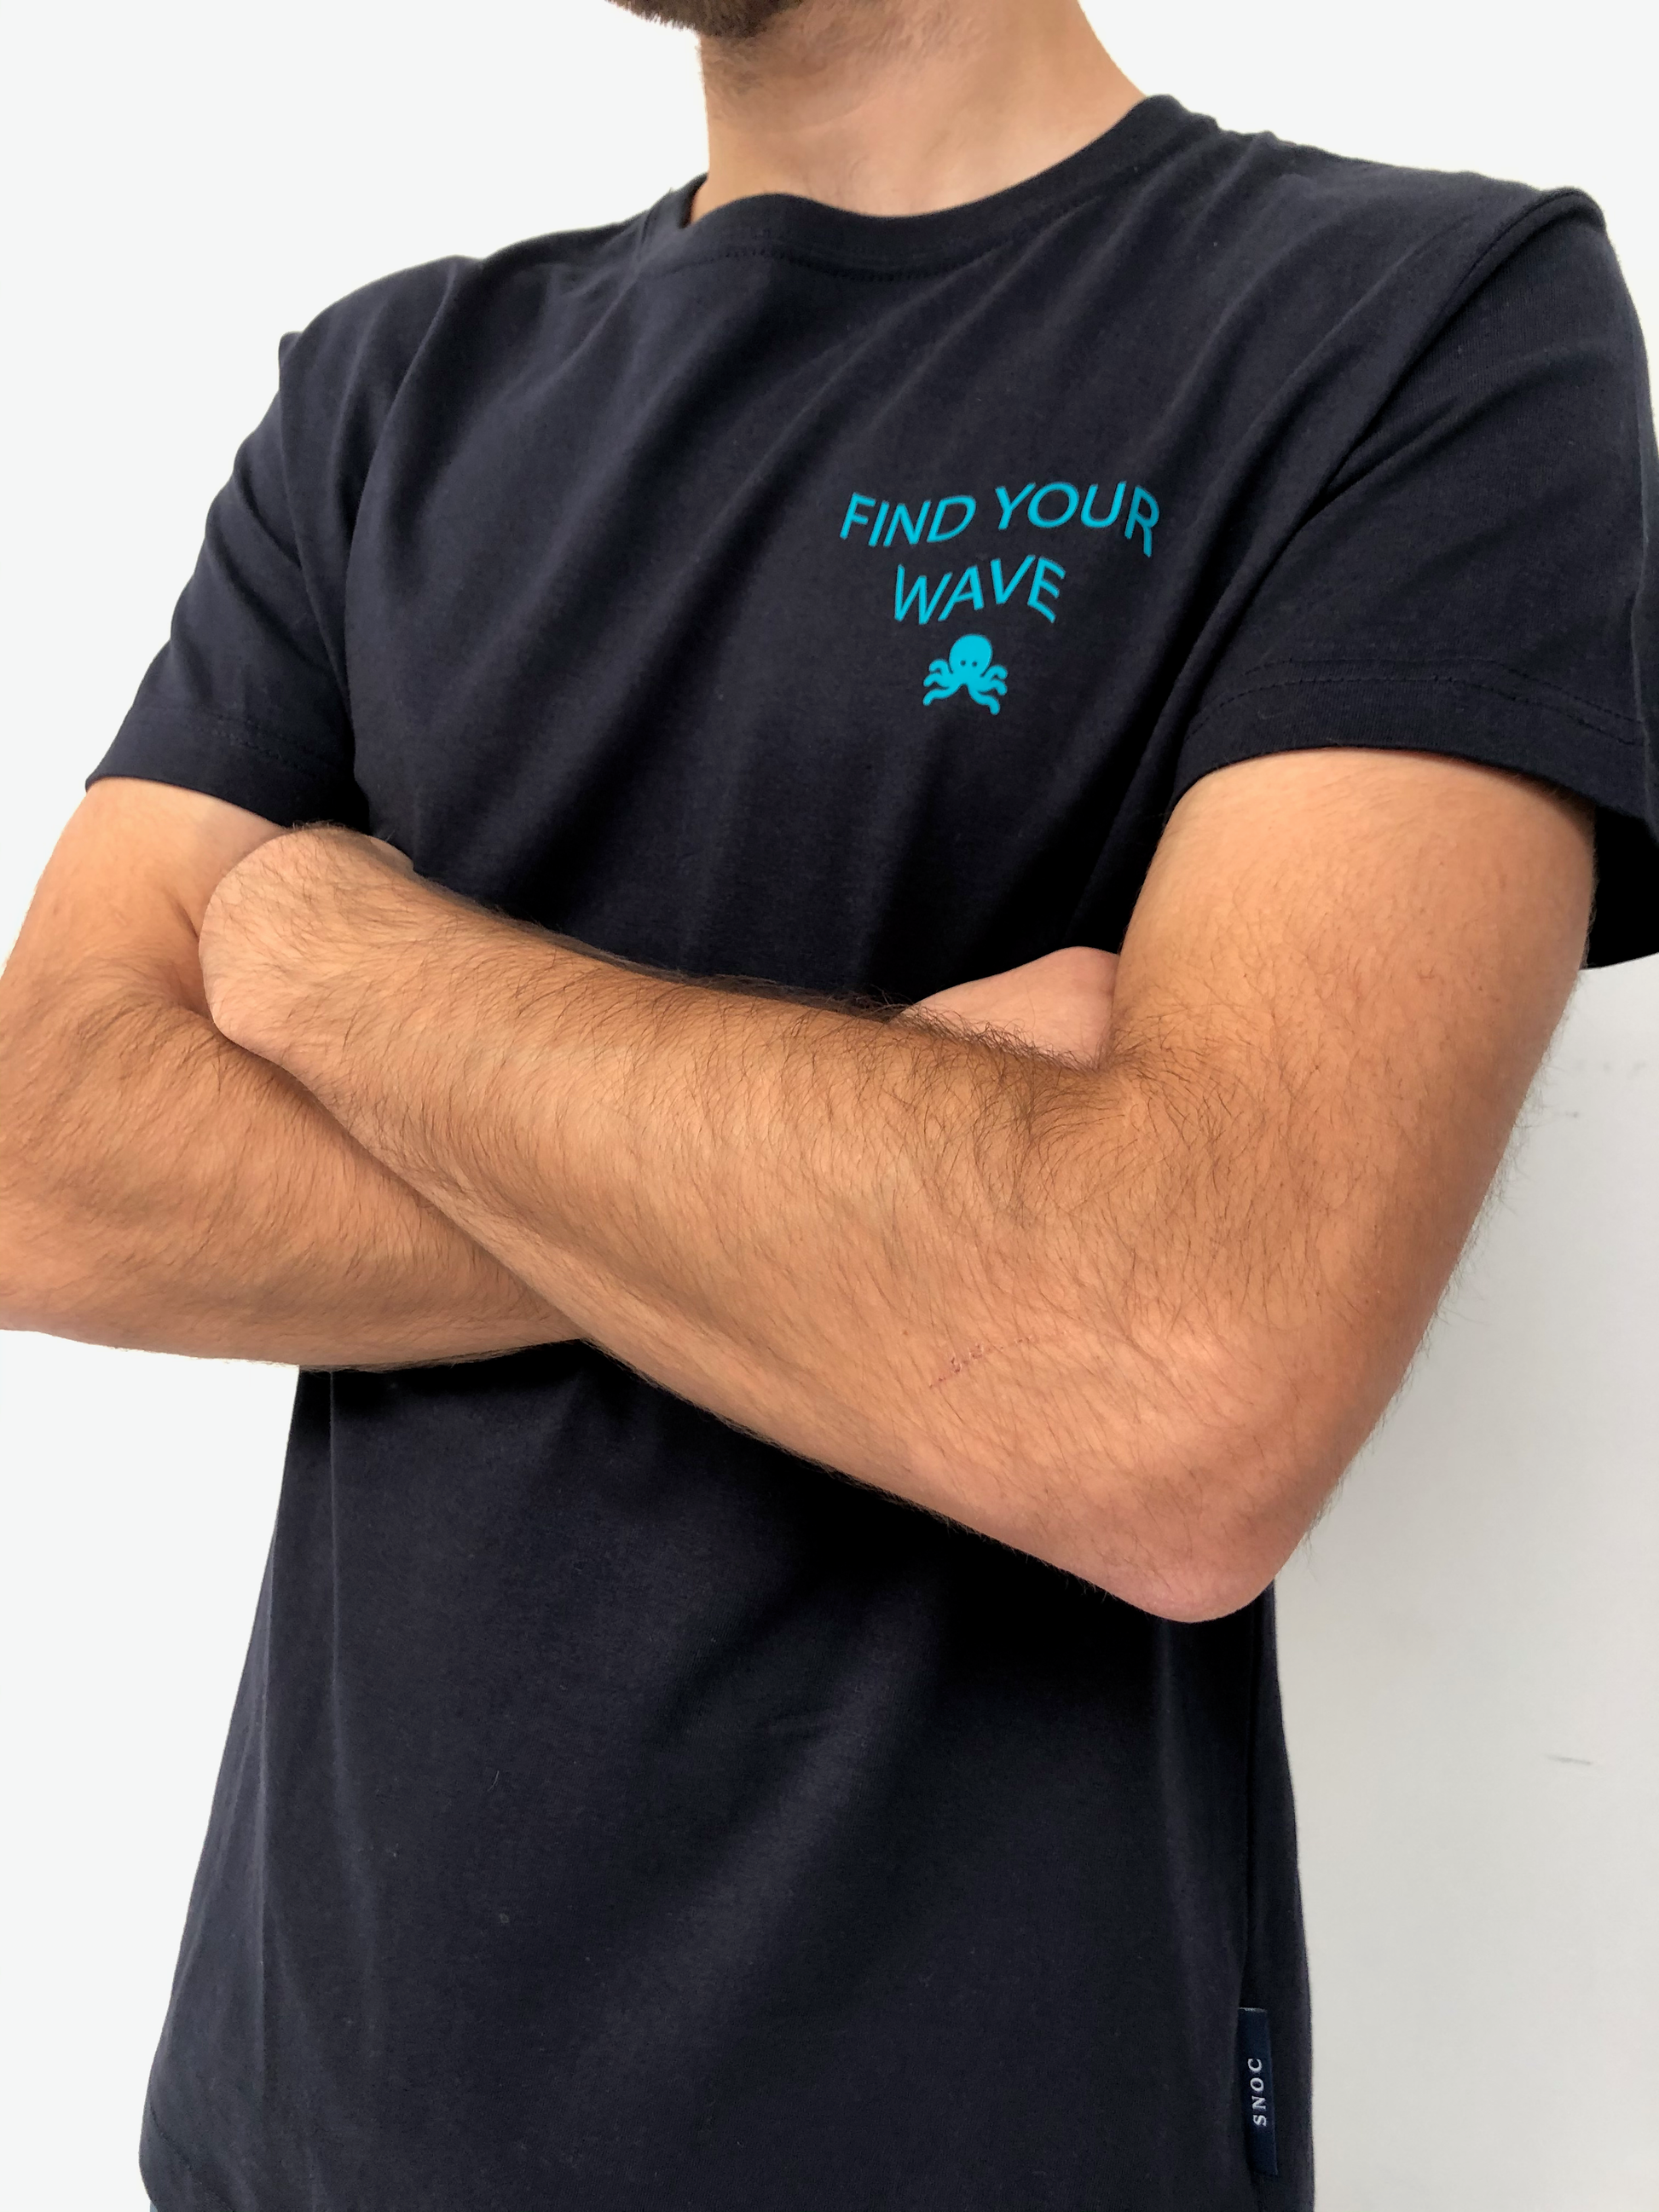 Camisetas logo pulpo SNOC - CAMISETA FIND YOUR WAVE  